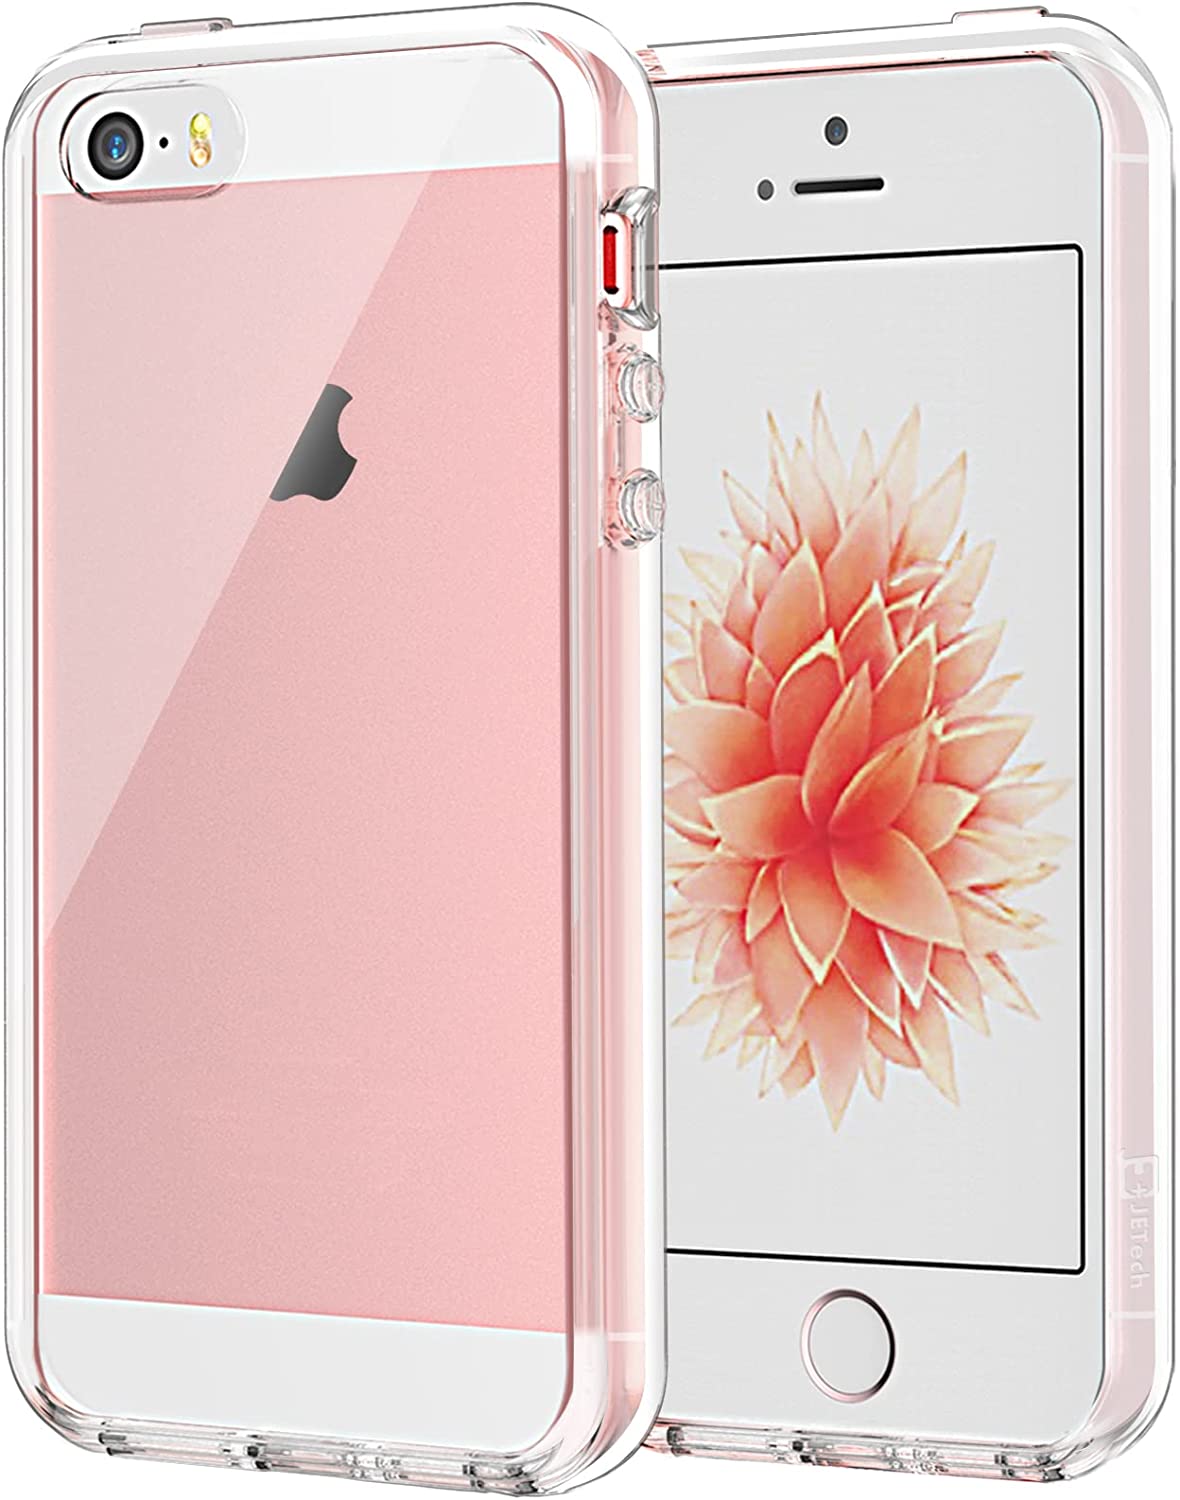 再入荷【未使用】iPhone 5S スペースグレー 64GB + ジェラルミンケース スマートフォン本体